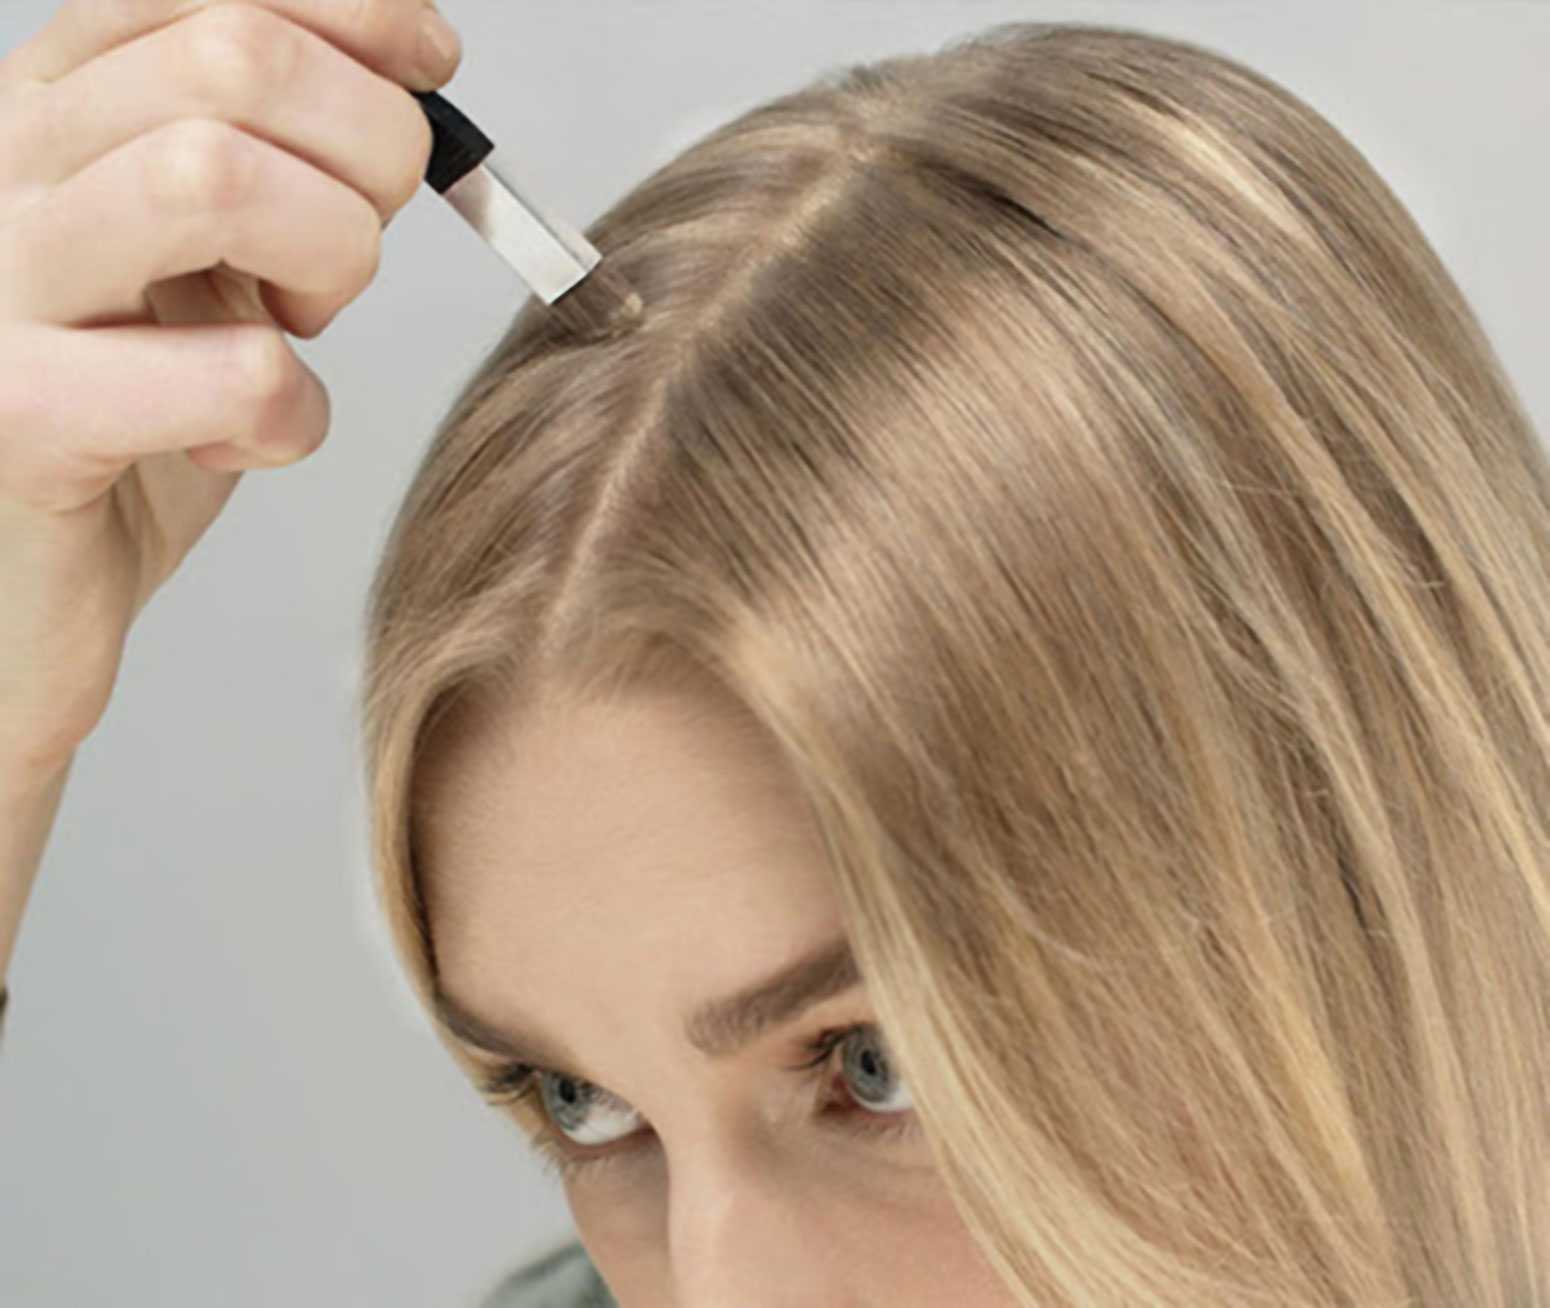 Сколько нужно отрастить волосы для мелирования? - ответы на женские вопросы и не только